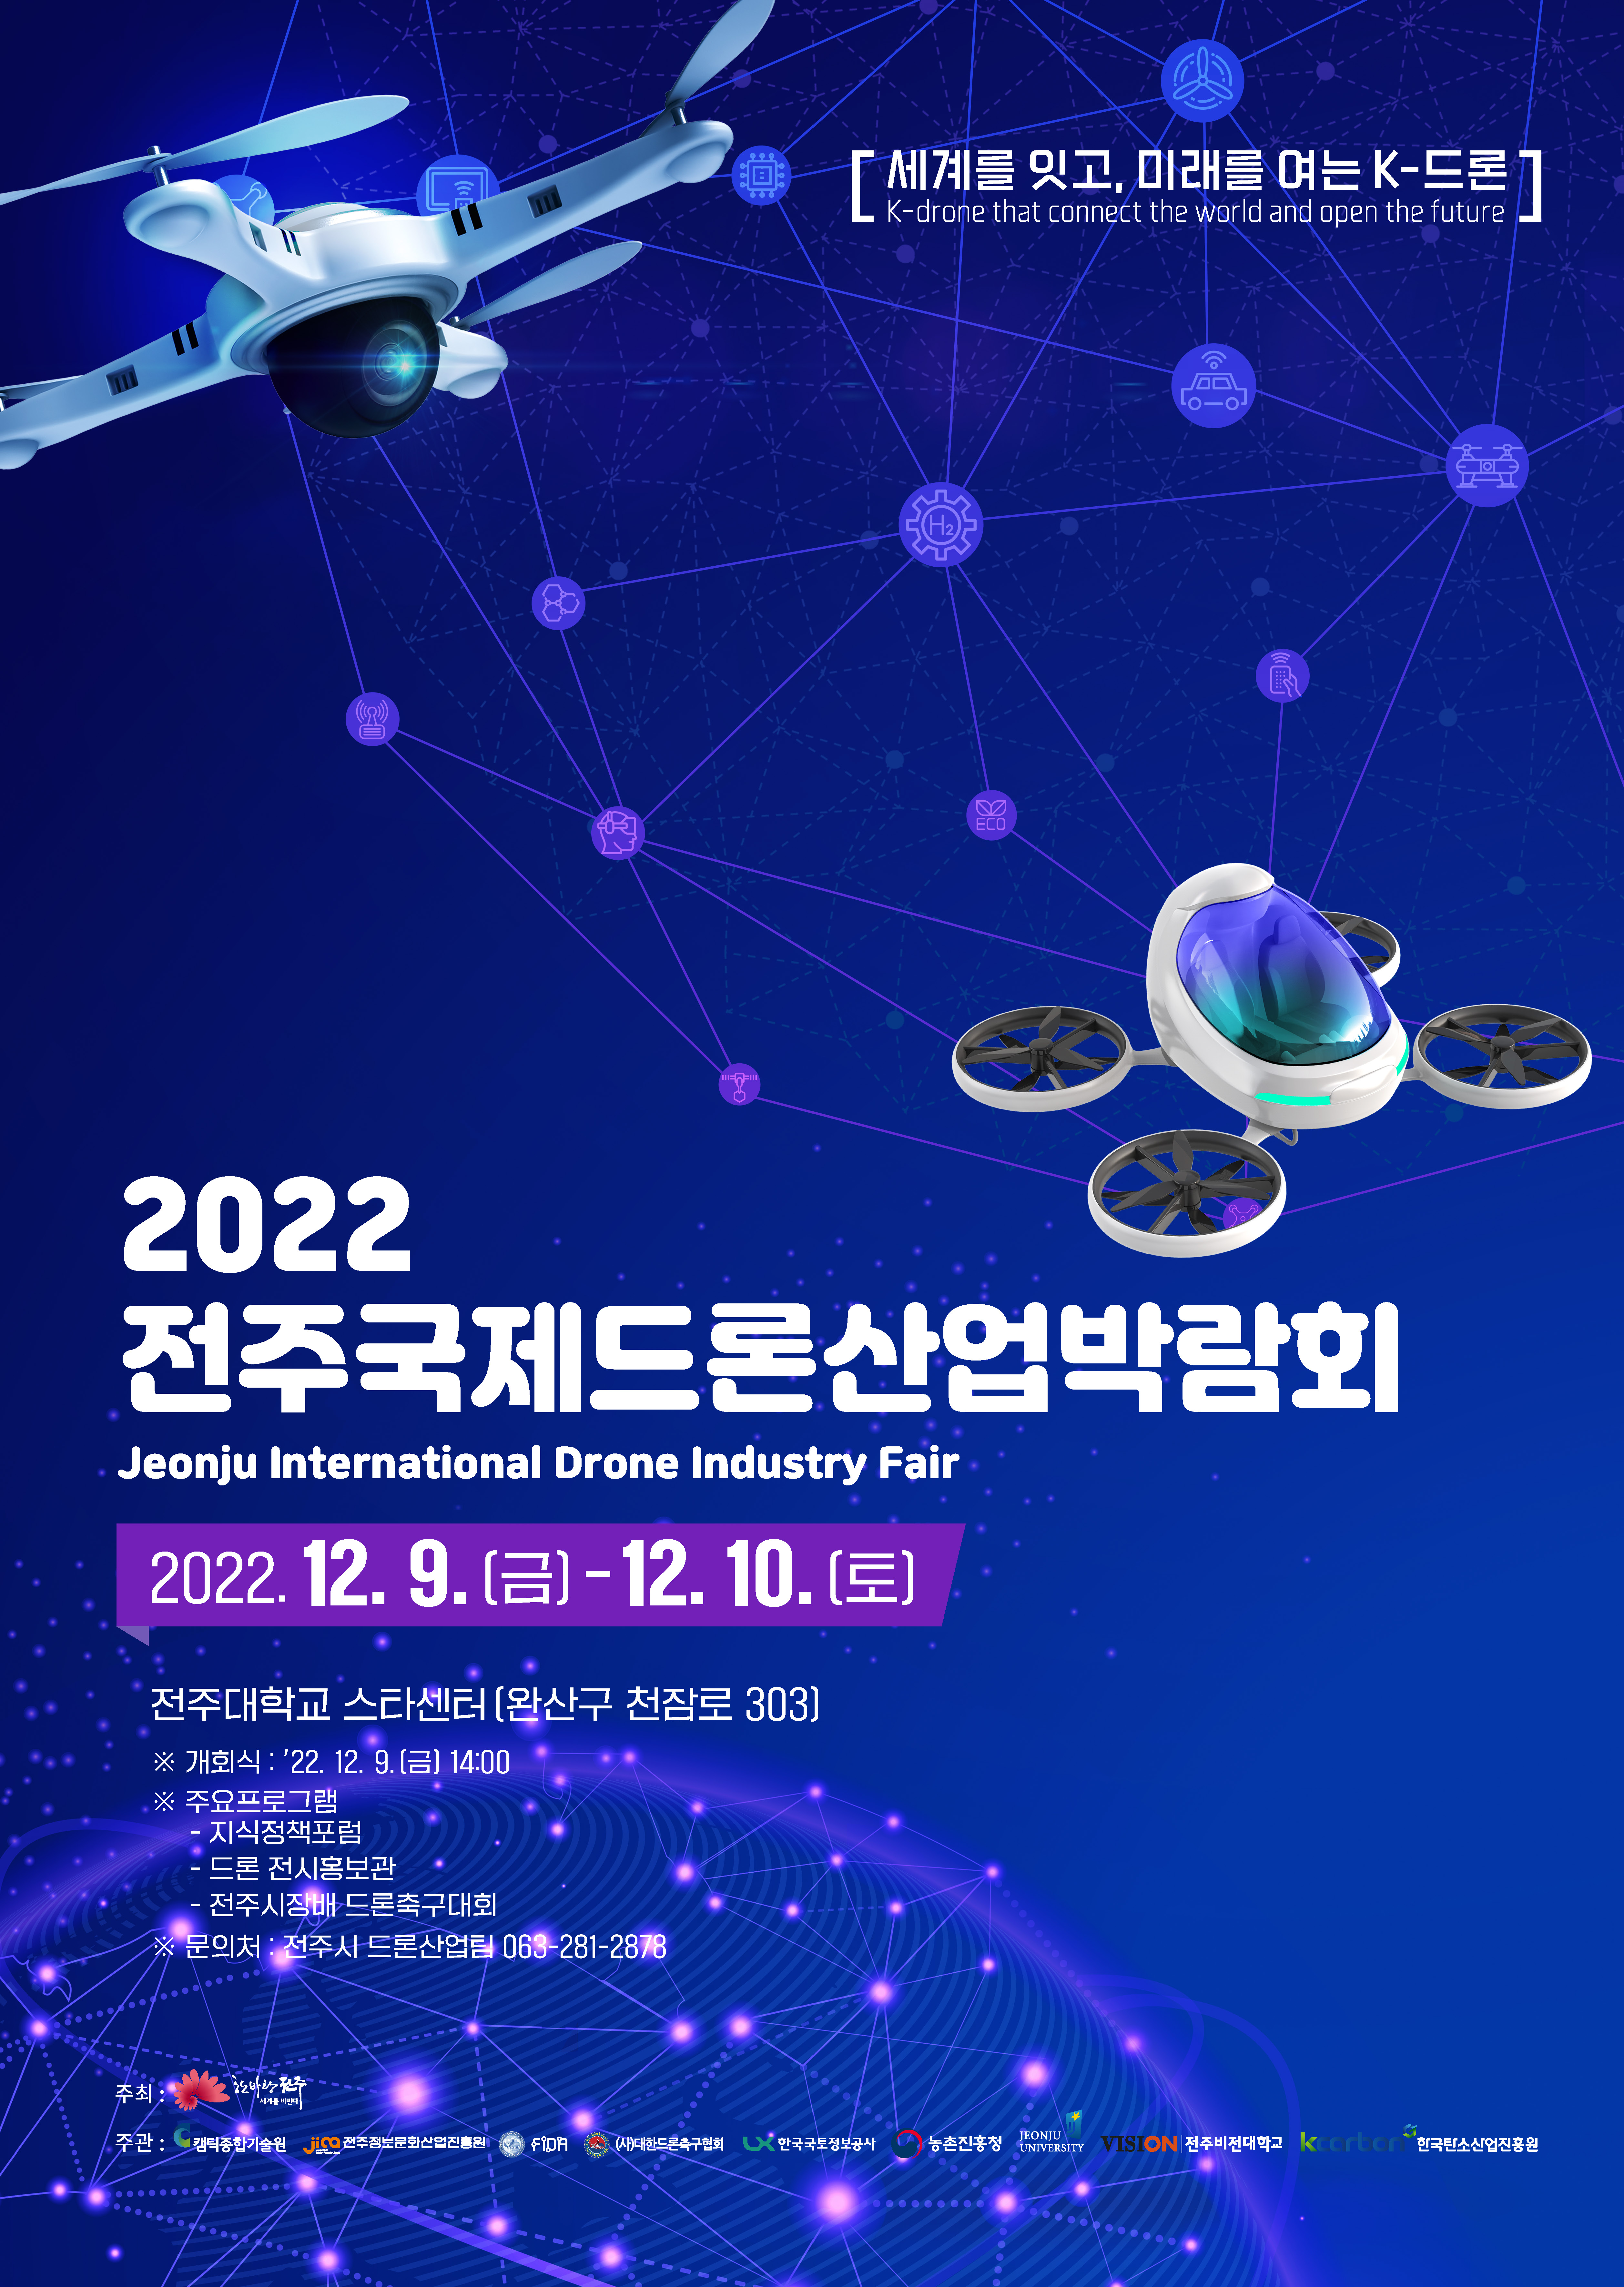 「2022 전주 국제 드론산업 박람회」 포스